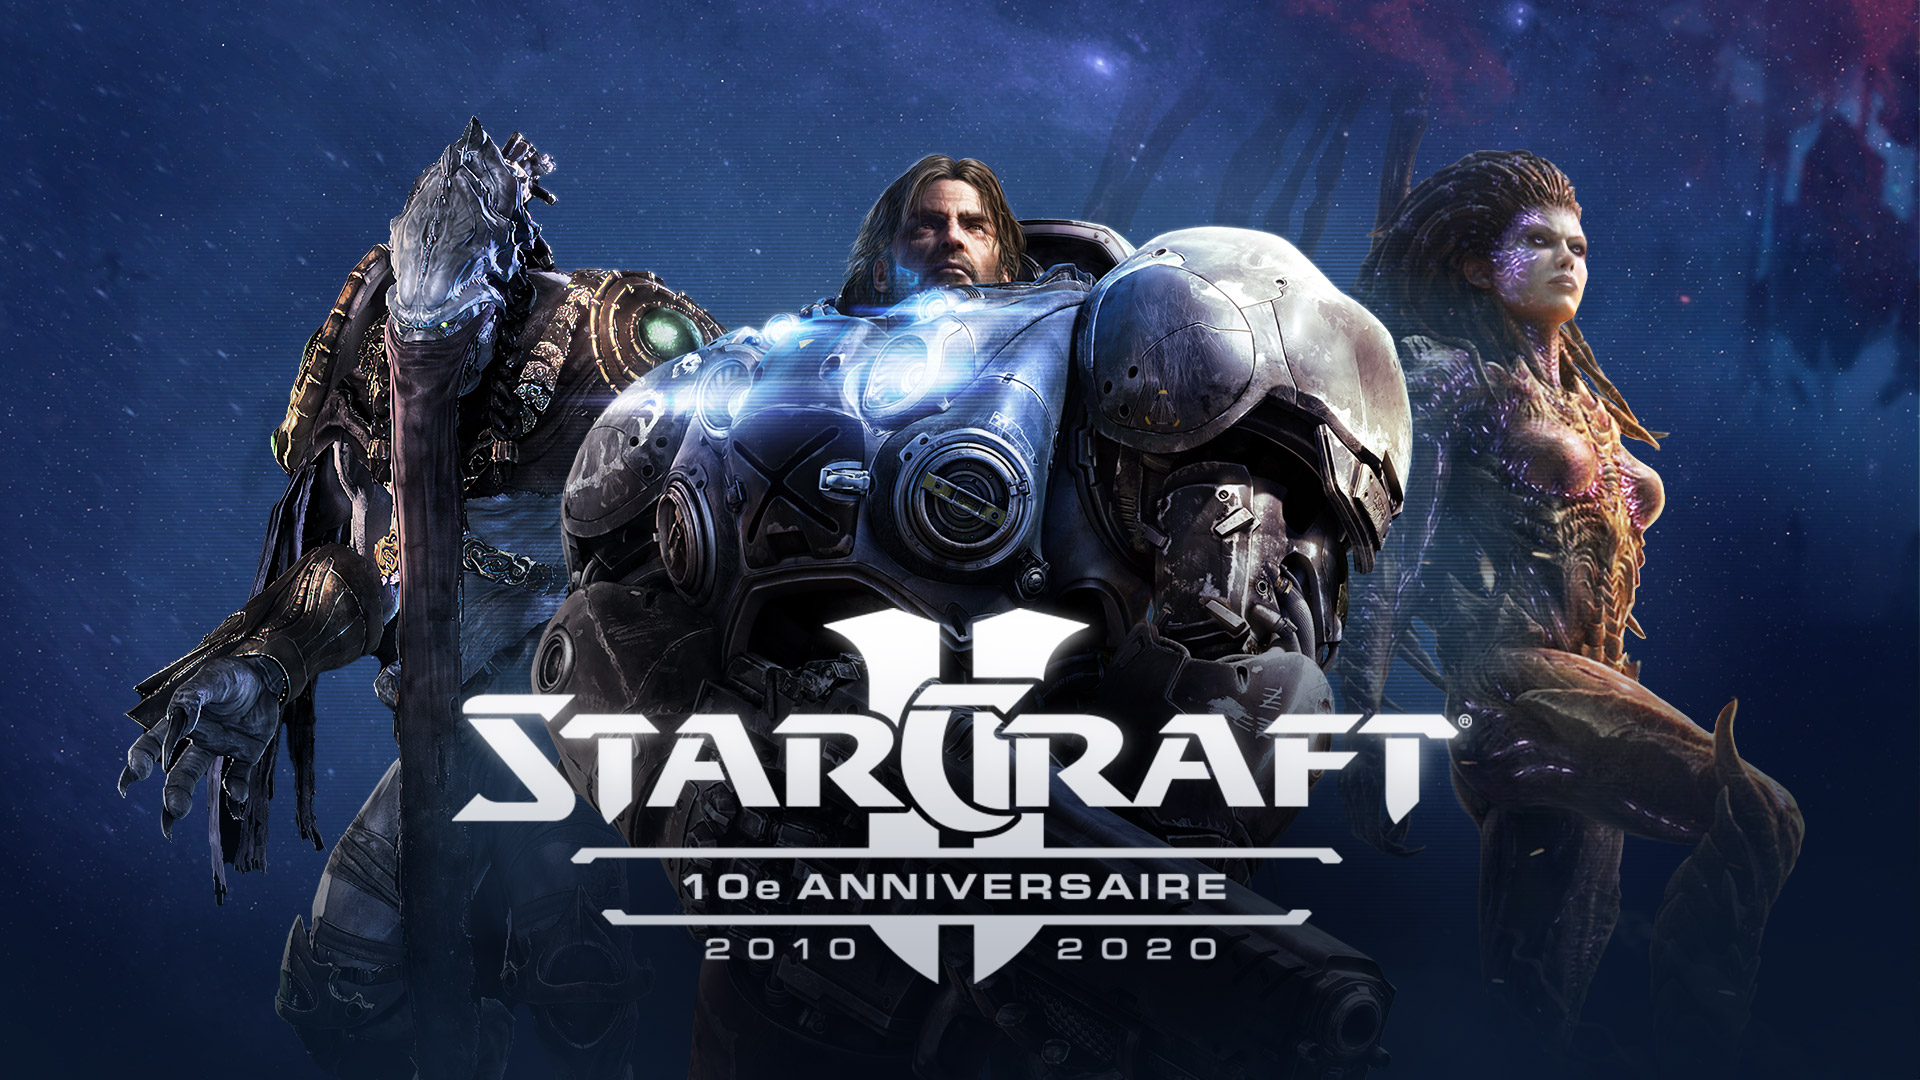 StarCraft II fête ses 10 ans, joignez-vous aux festivités !